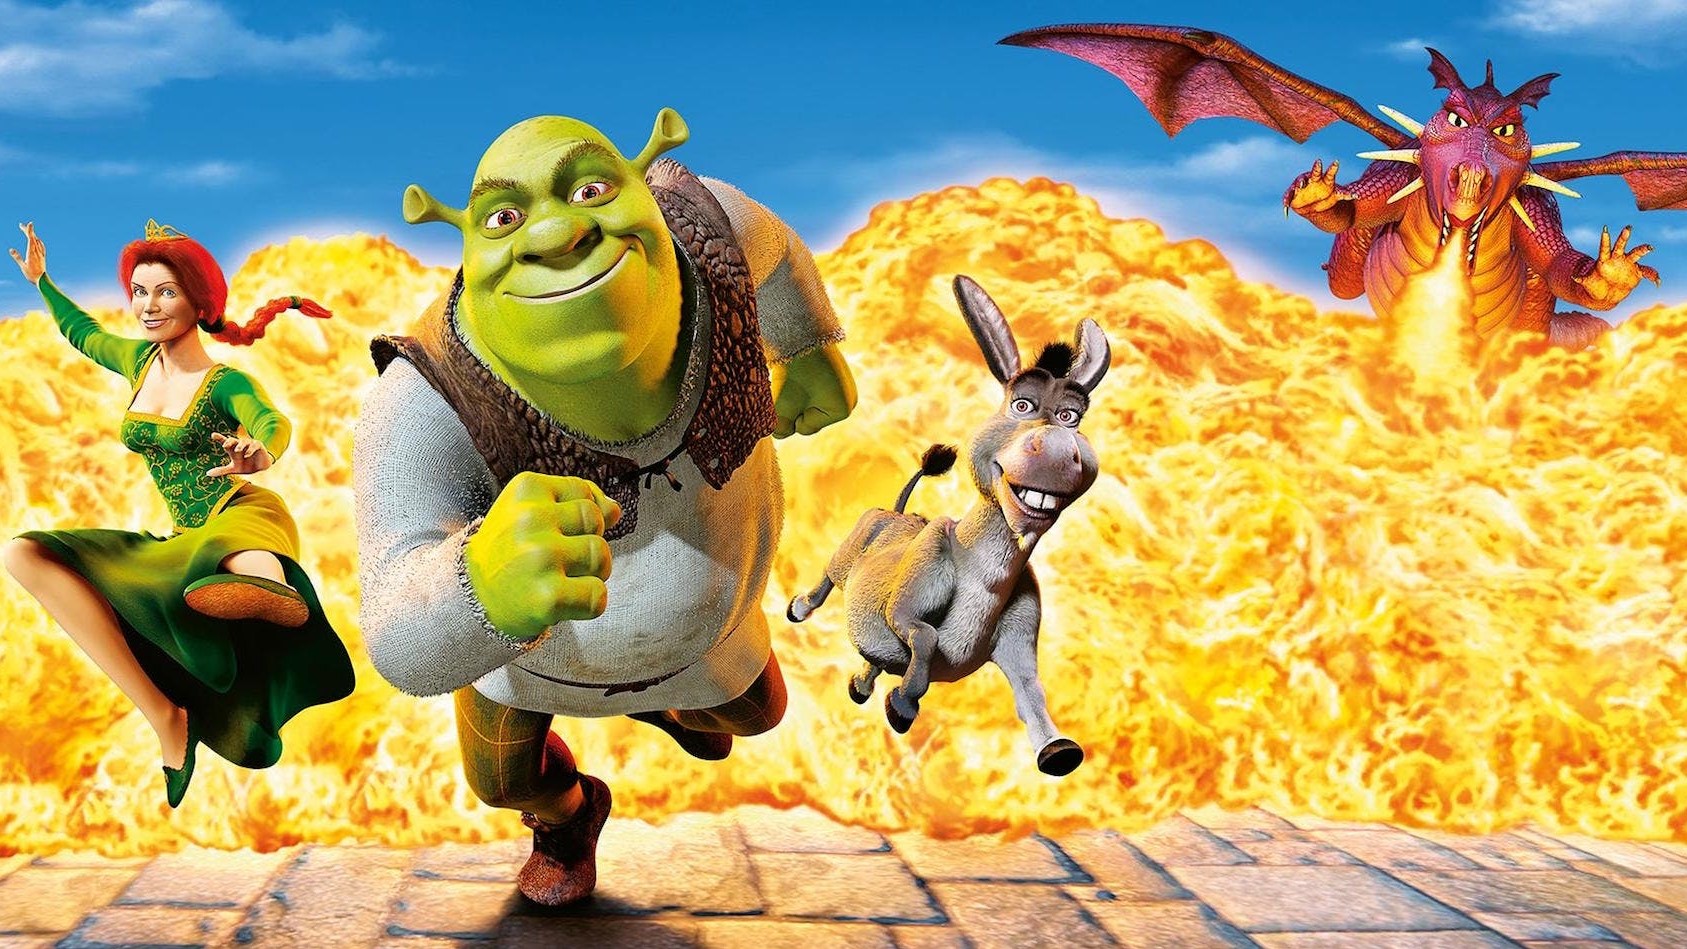 Shrek 5 release date cast